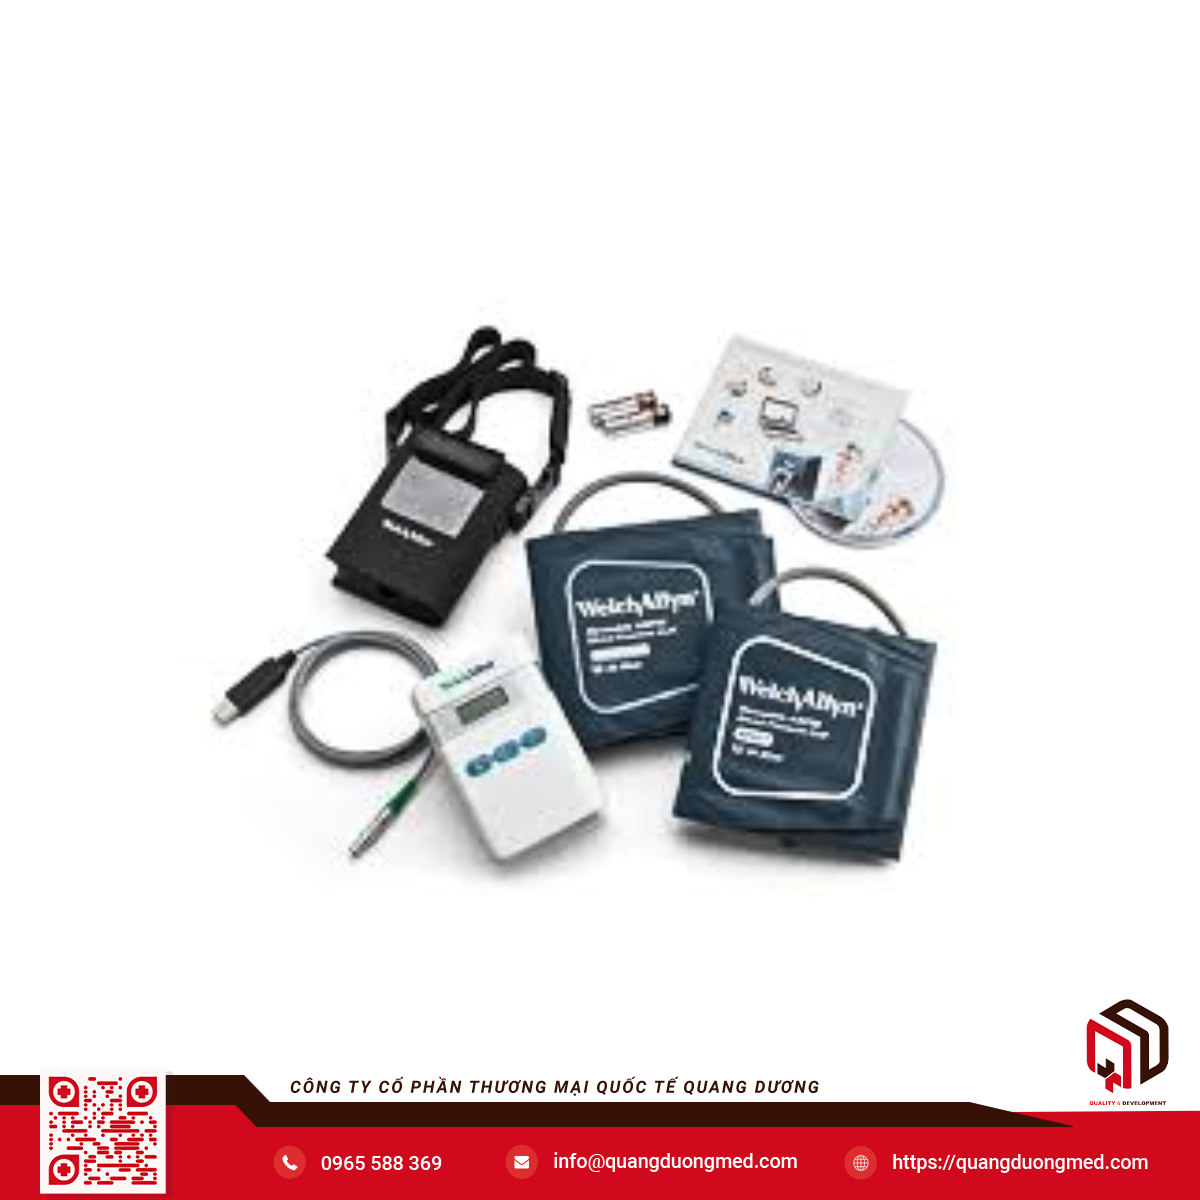 Hệ thống holter huyết áp 24h - Model: Abpm7100 - Hãng: 	I.E.M GmbH - Xuất xứ: Đức